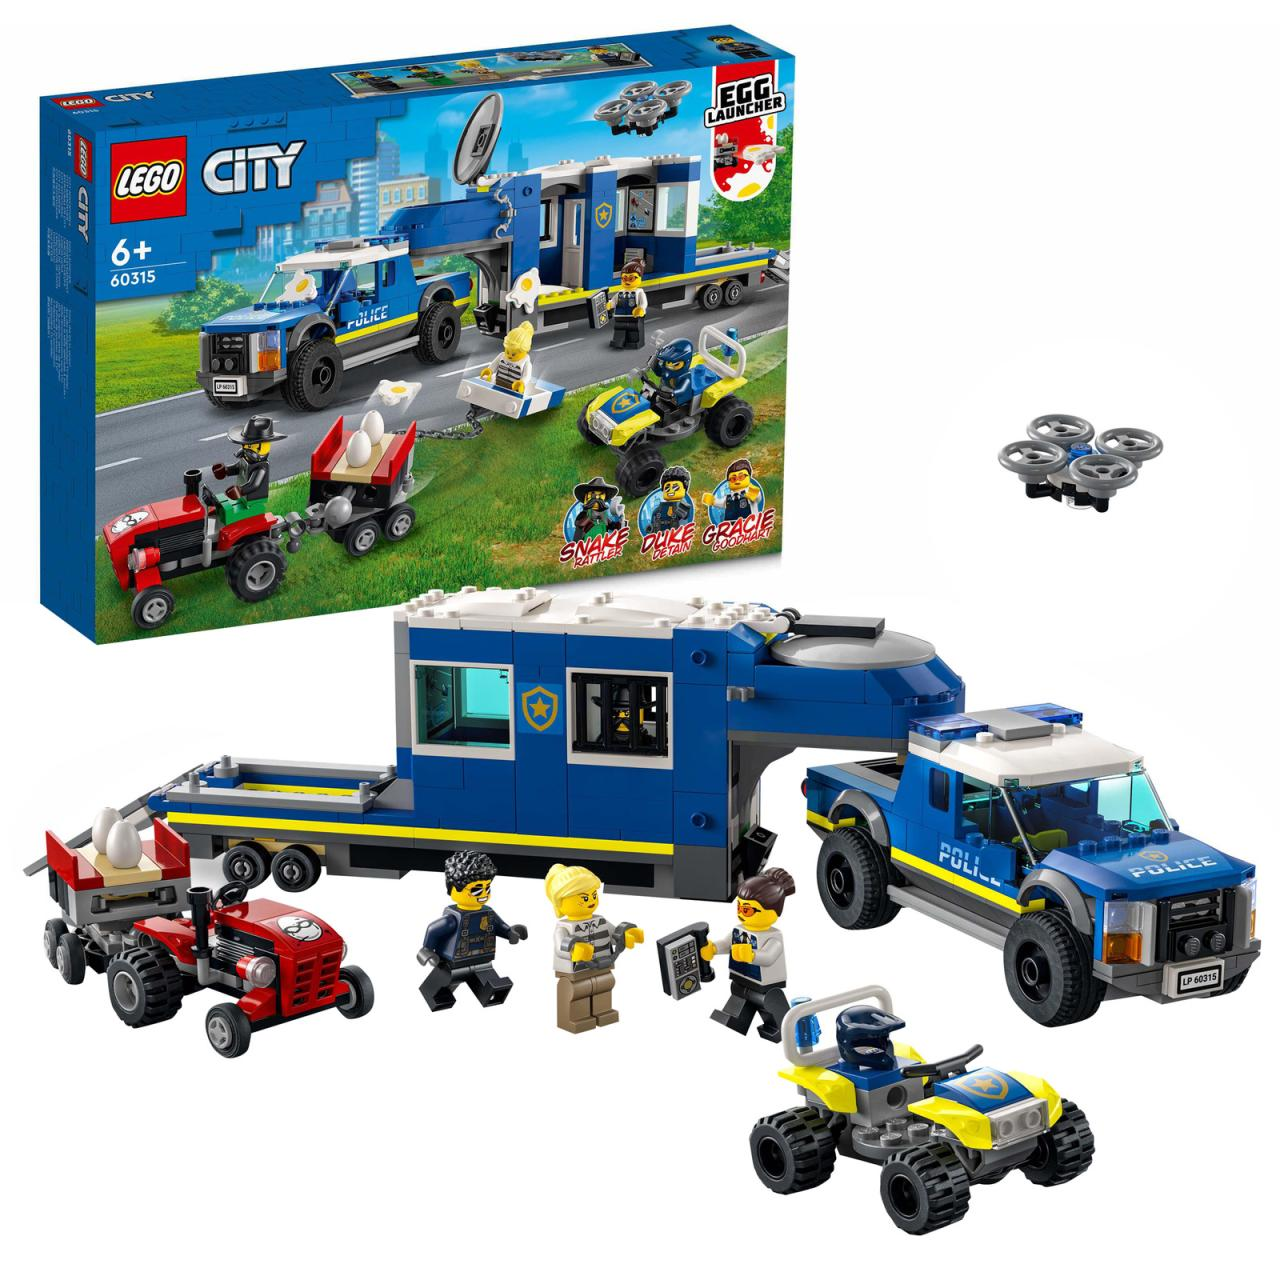 Lego City Central de policía 6 años coches juguete para todoterreno dron tractor y edad juego 60315 6a